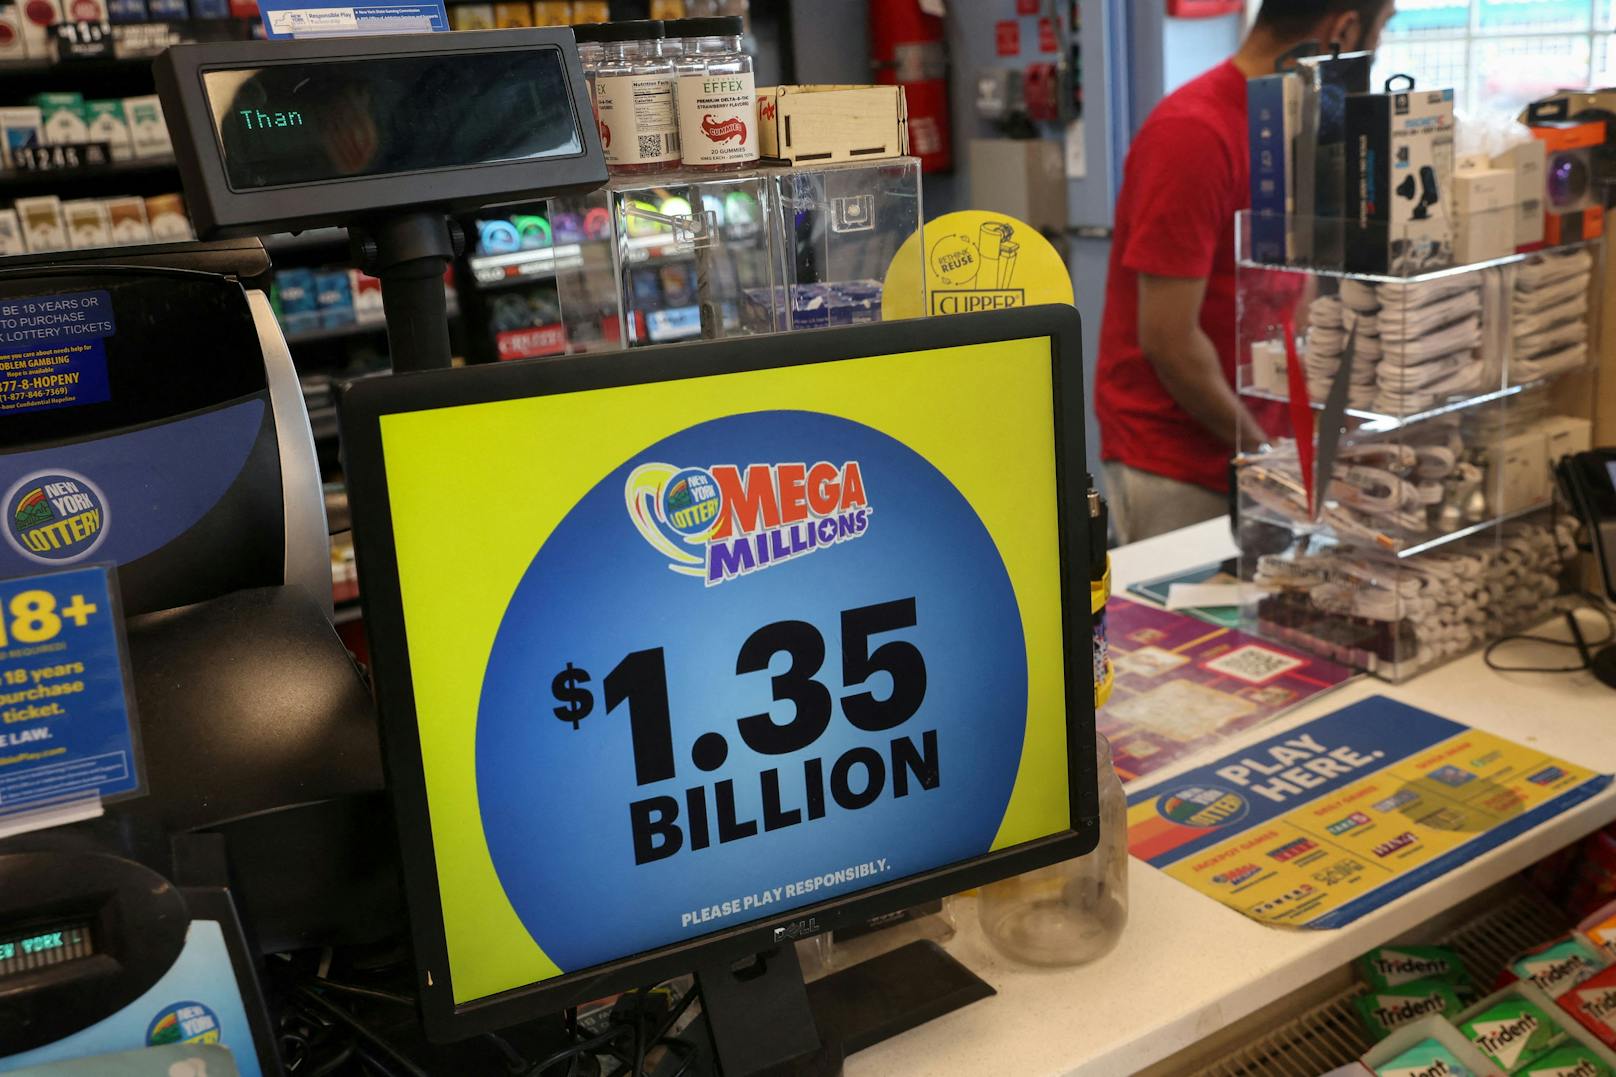 Der rund 1,35 Milliarden Dollar schwere Jackpot der US-Lotterie <a data-li-document-ref="100220264" href="https://www.heute.at/s/126-milliarden-euro-lottospieler-knackt-mega-jackpot-100220264">Mega Millions</a> ist geknackt.